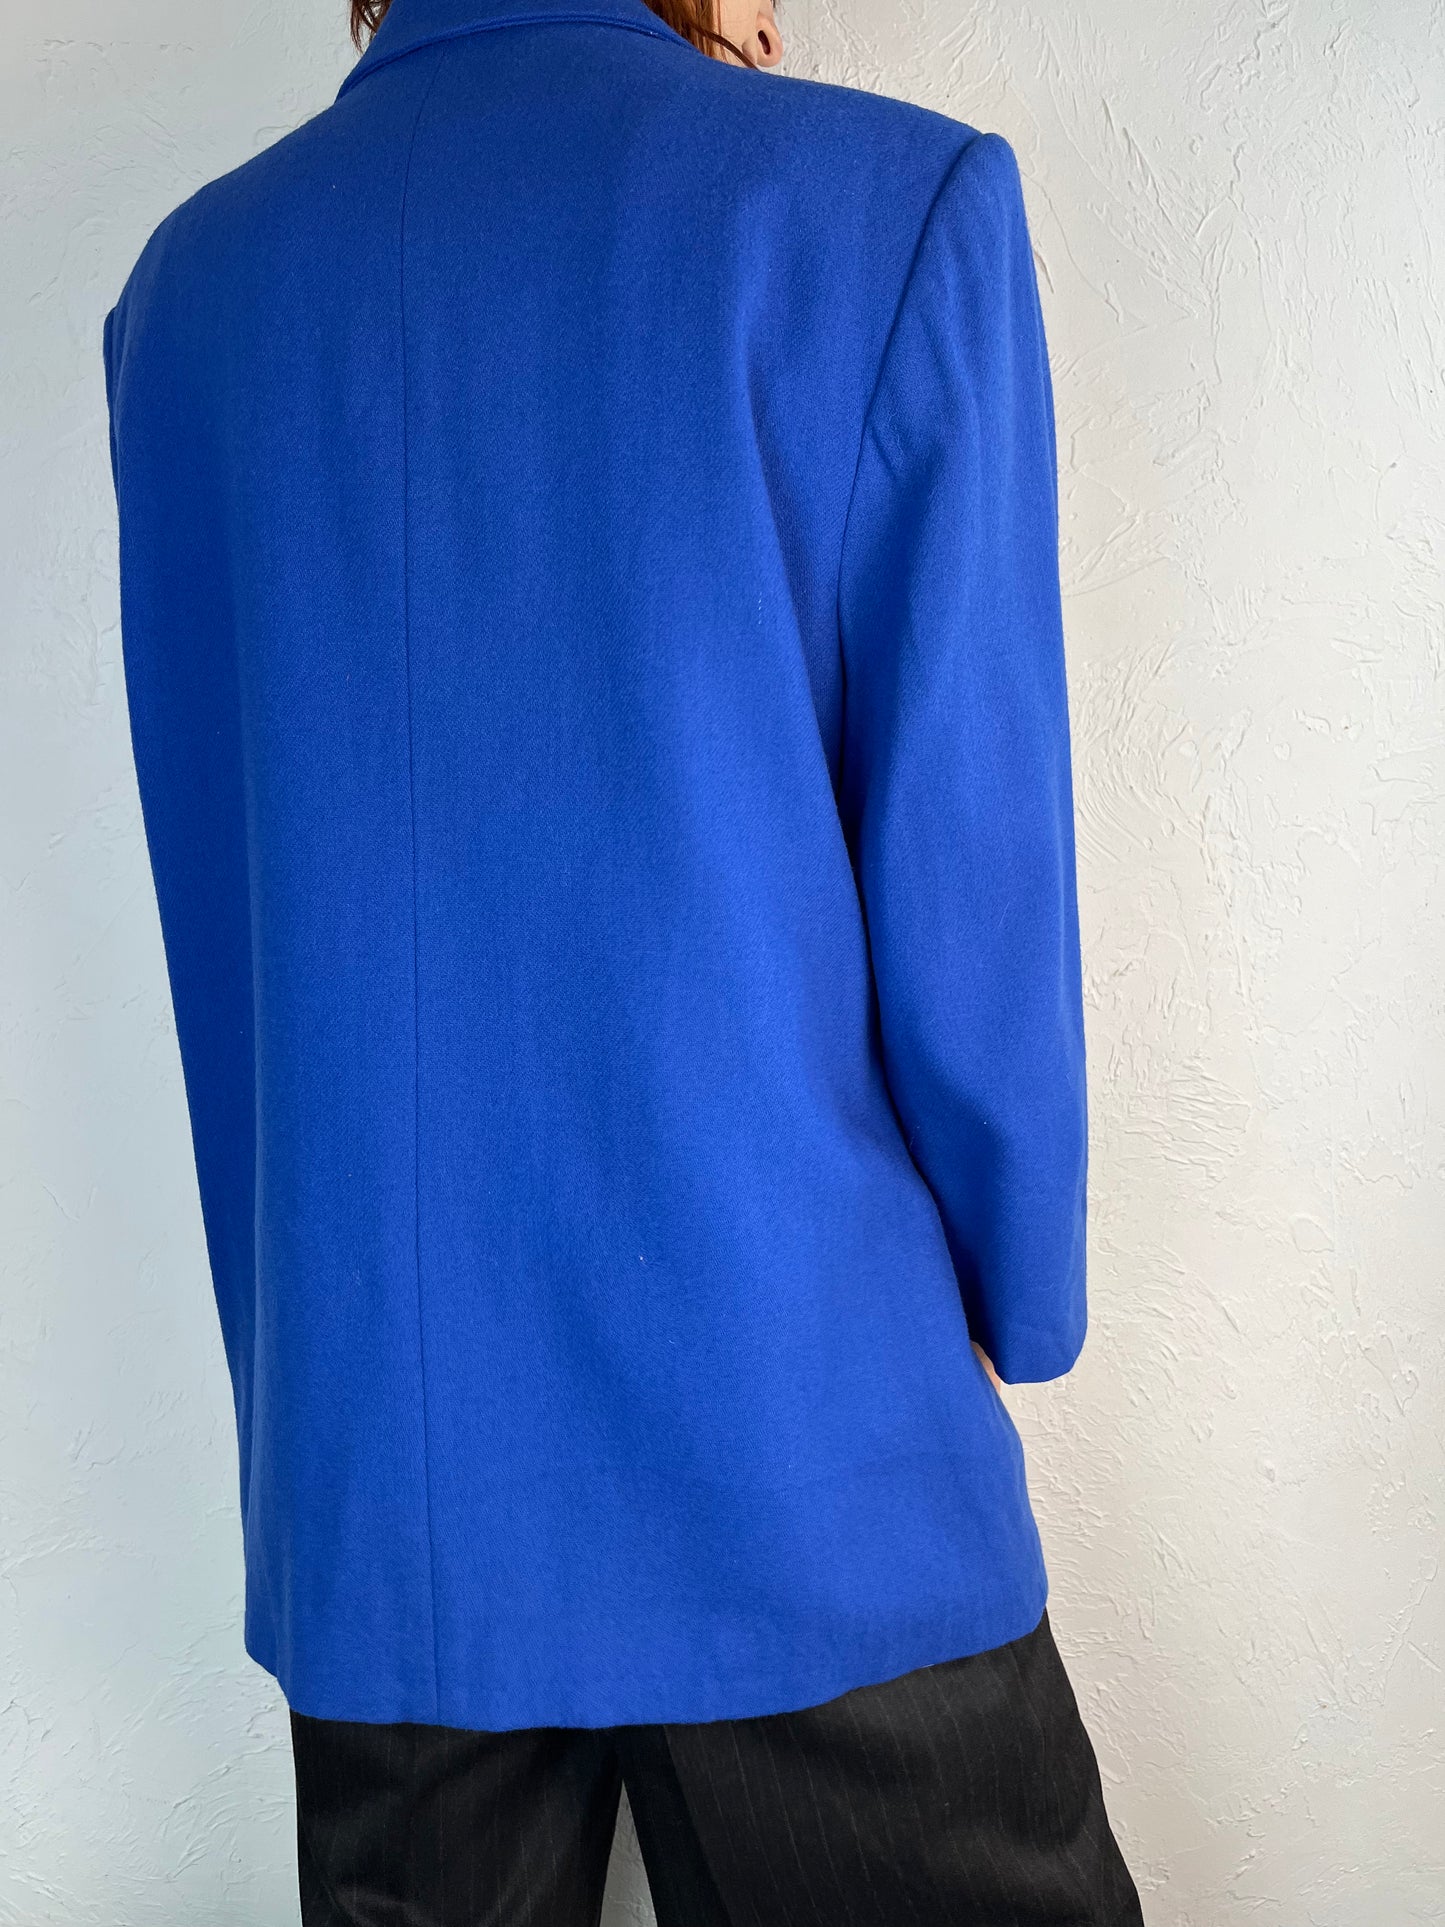 90s 'Cathy Daniels' Blue Wool Blazer Jacket / Large